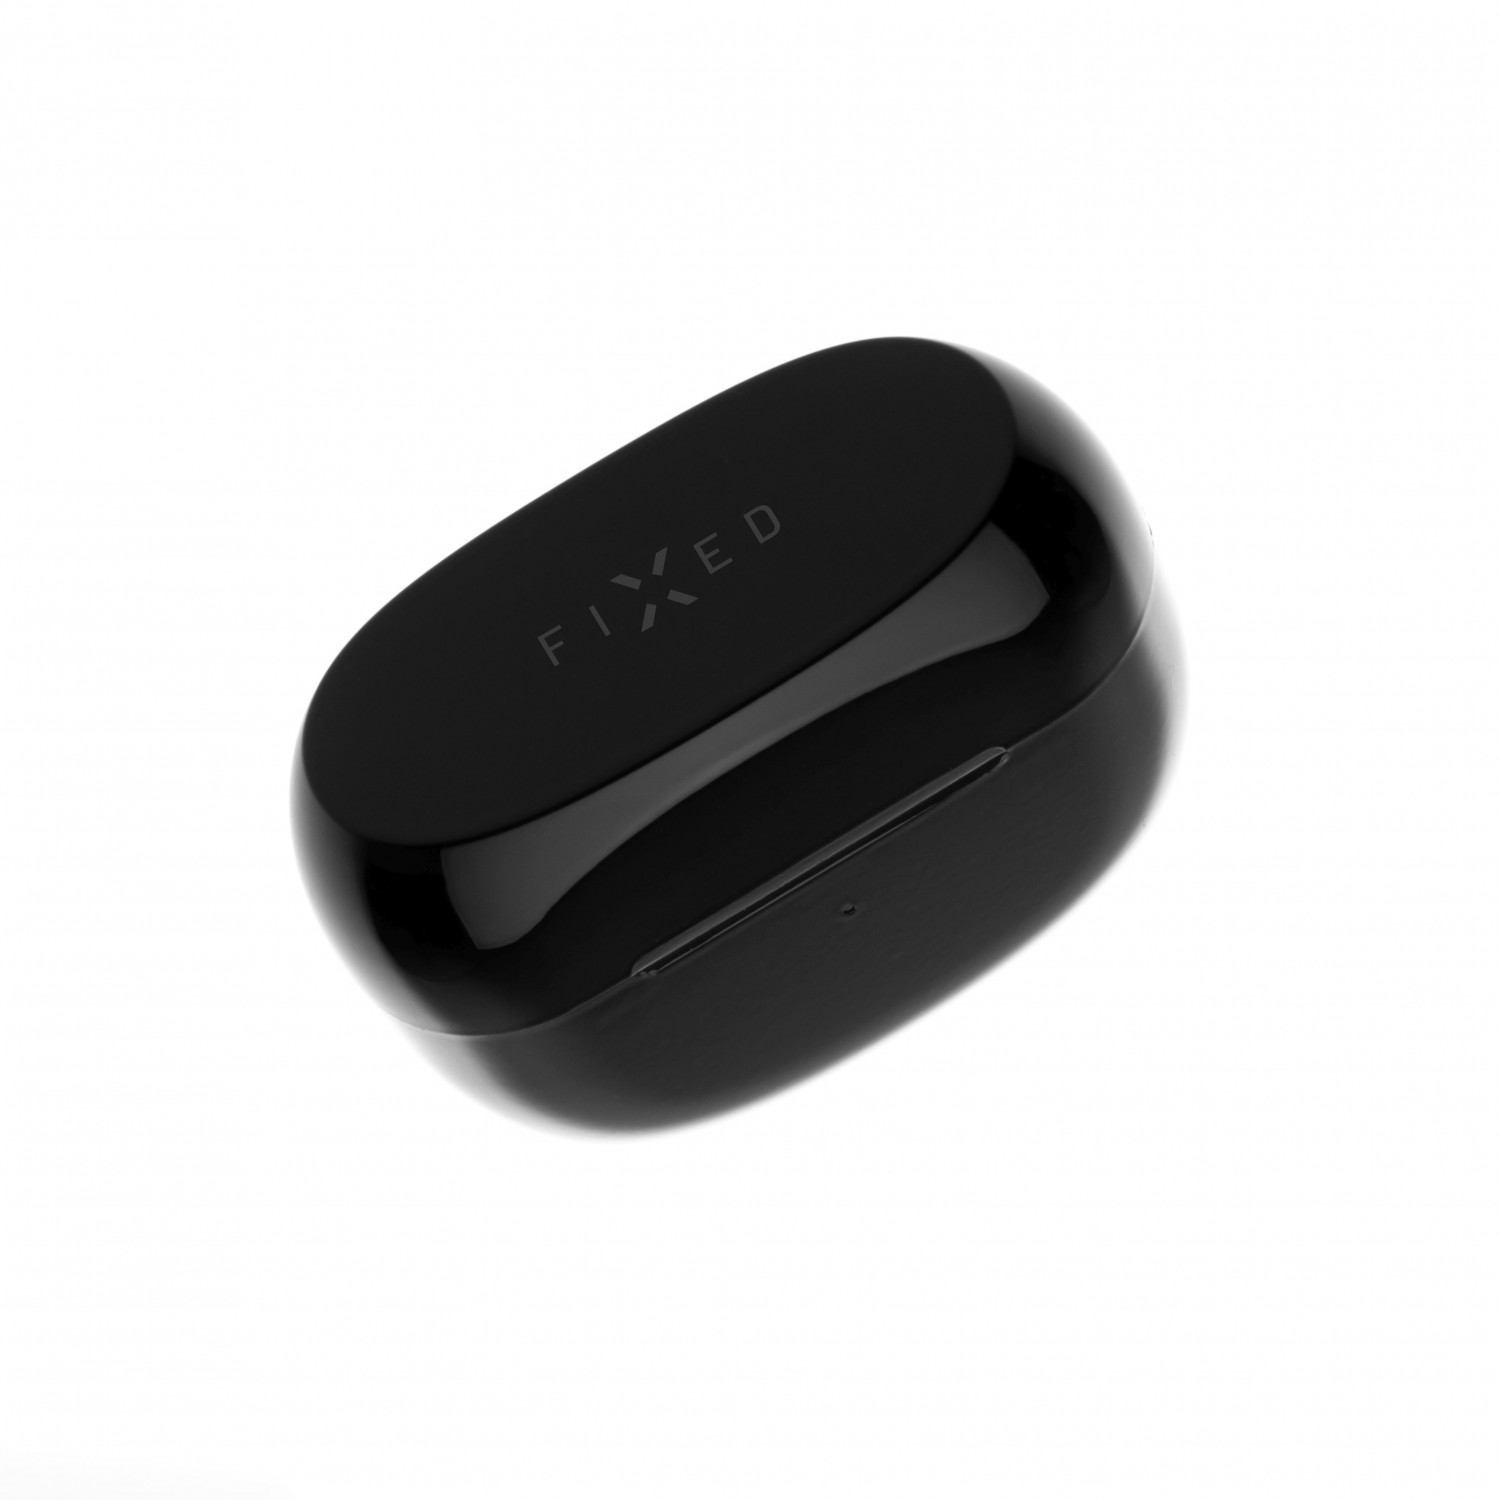 TWS sluchátka FIXED Boom Pods 2 s bezdrátovým nabíjením, černá